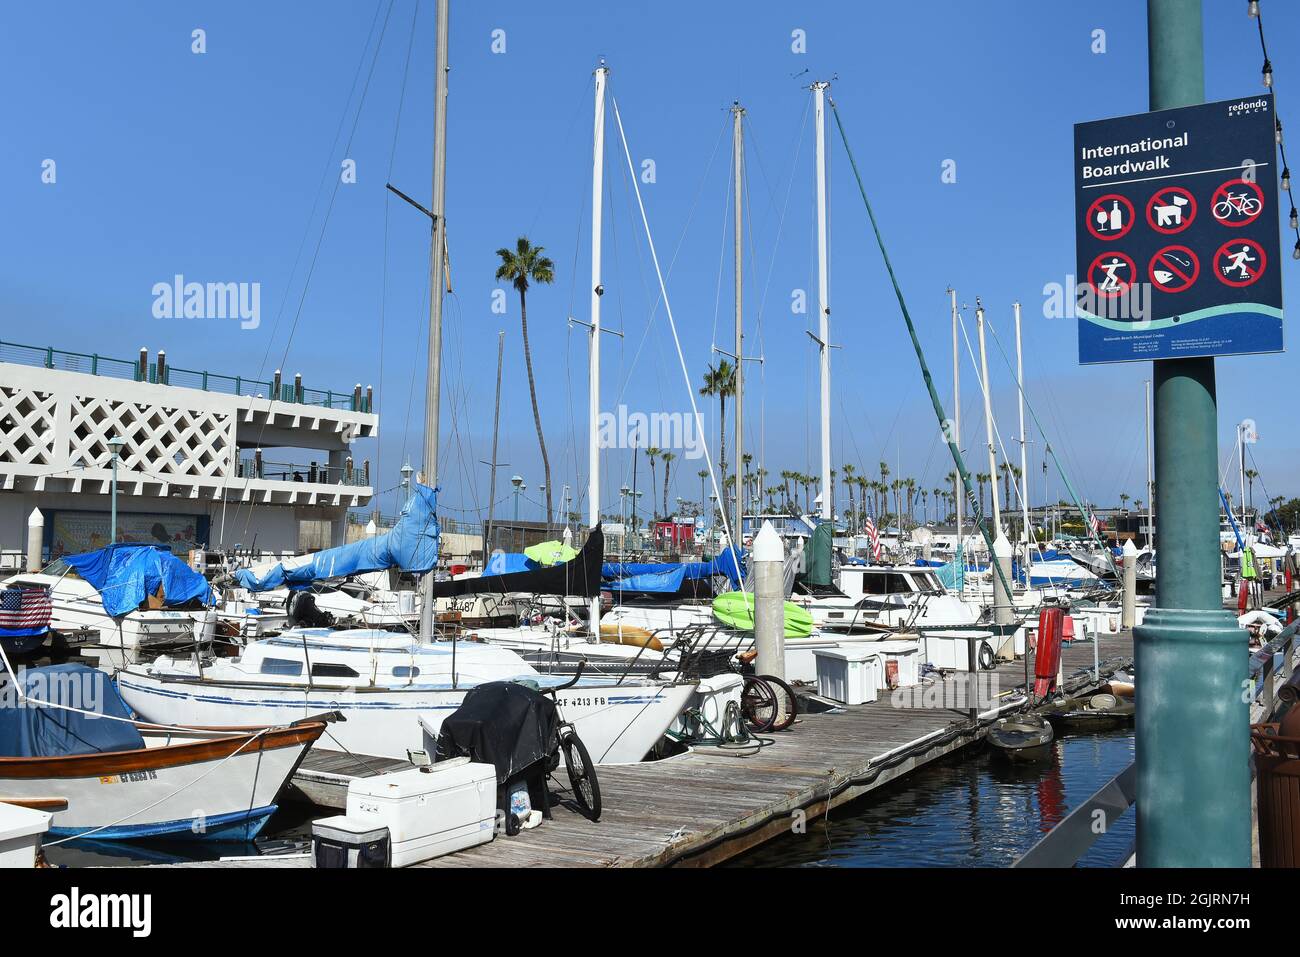 REDONDO BEACH, CALIFORNIA - 10 SEP 2021: Das International Boardwalk-Schild mit Blick auf den Yachthafen. Stockfoto